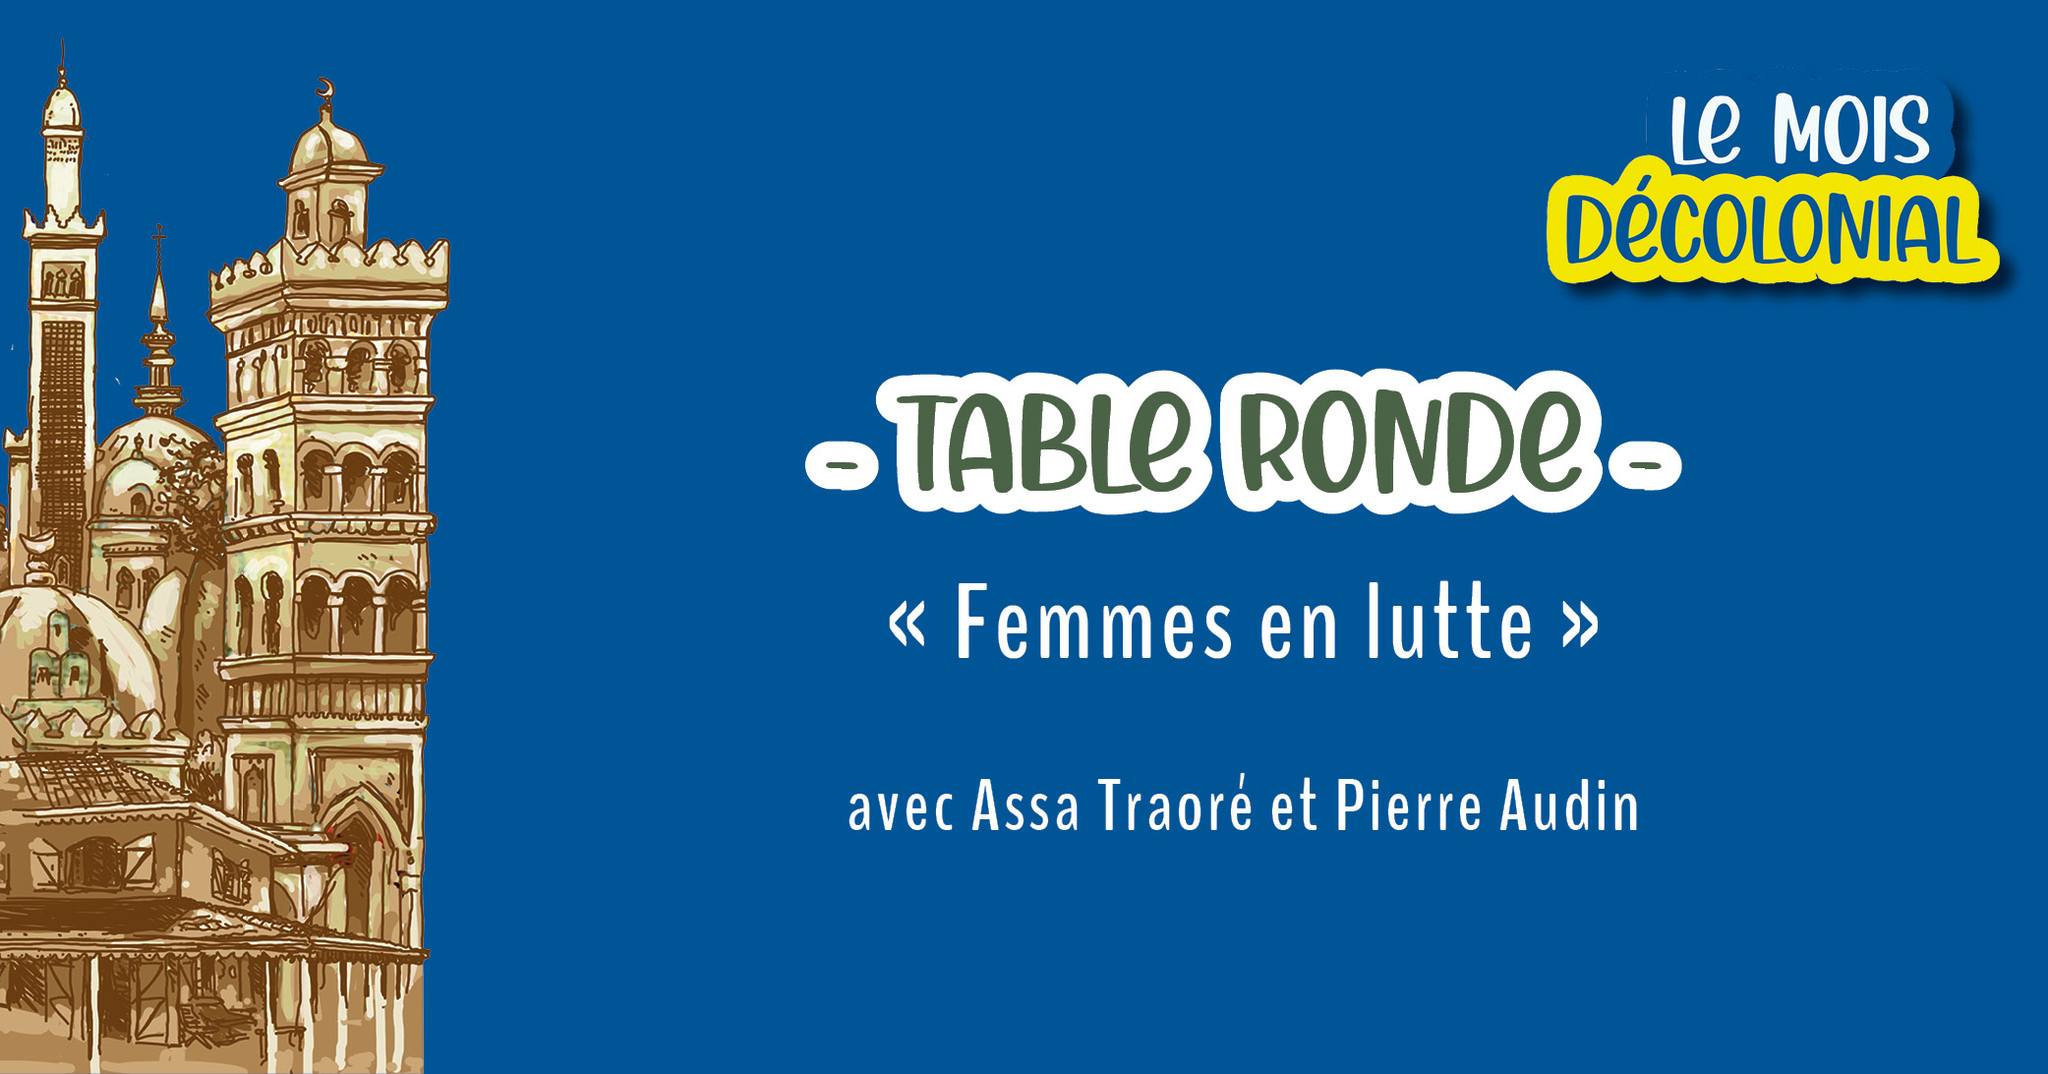 TABLE RONDE • « Femmes en lutte » avec Assa Traoré & Pierre Audin